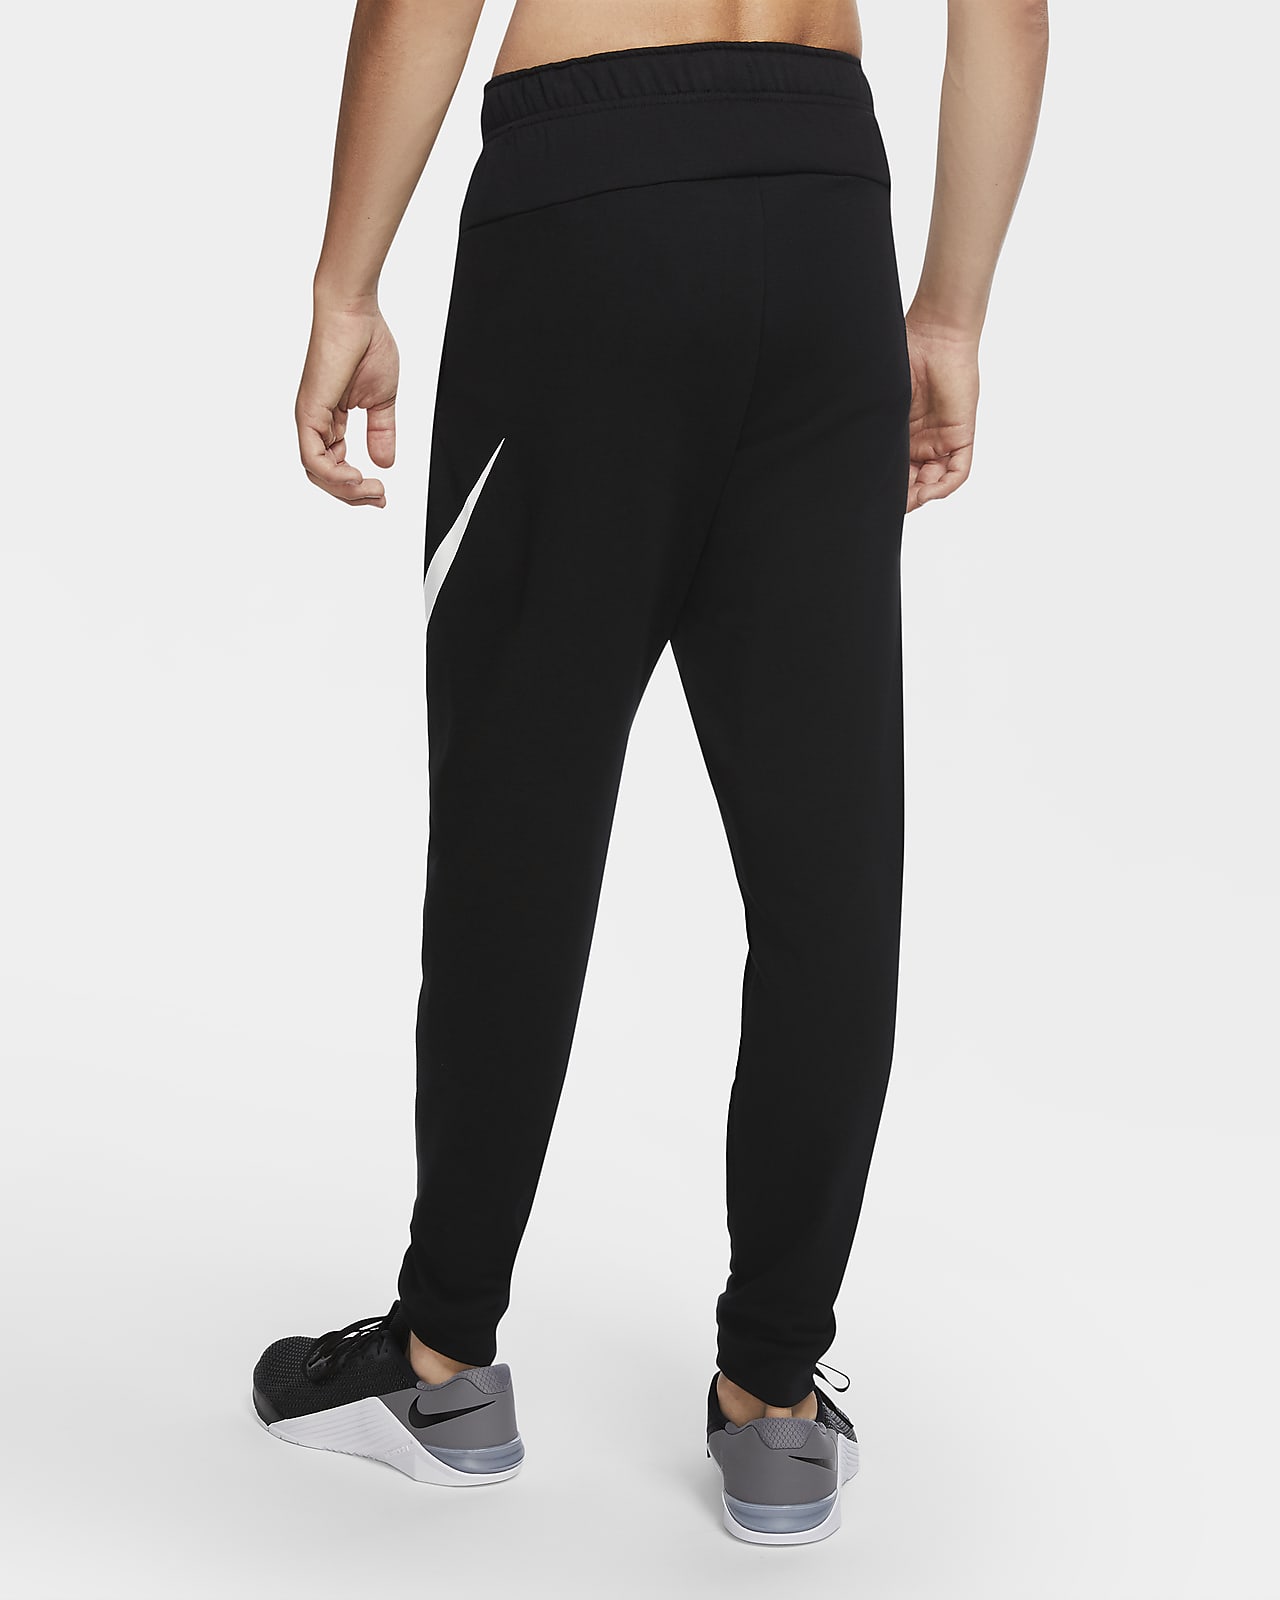 Stoffelijk overschot Graan Mount Bank Nike Dry Graphic Dri-FIT toelopende fitnessbroek voor heren. Nike NL